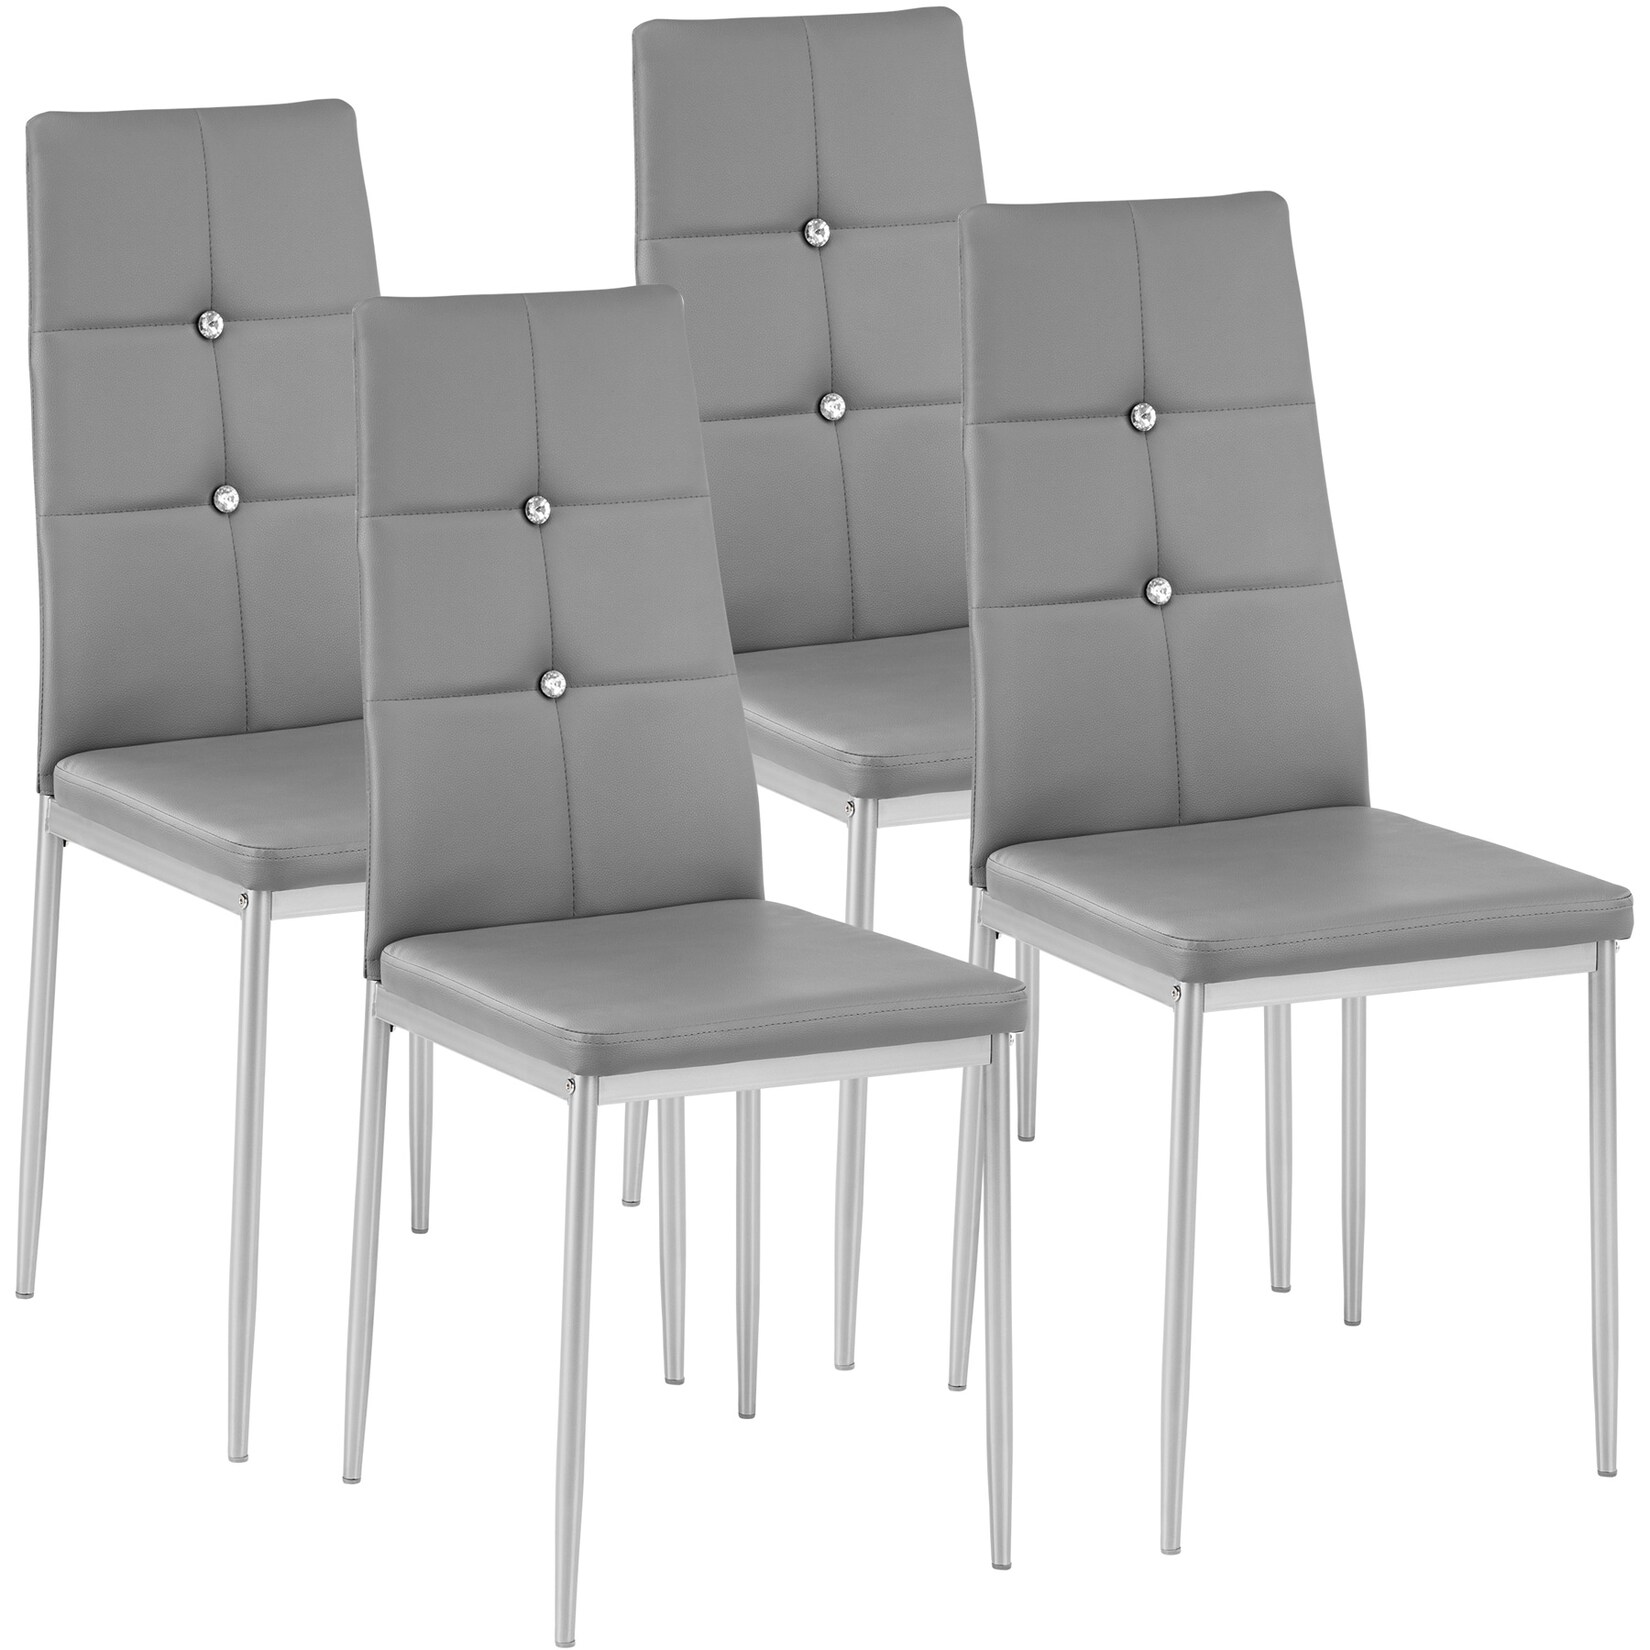 tectake® 4er Set Esszimmerstuhl, gepolstert mit Kunstlederbezug, schlanke Stahlbeine, 40 x 42 x 97 cm